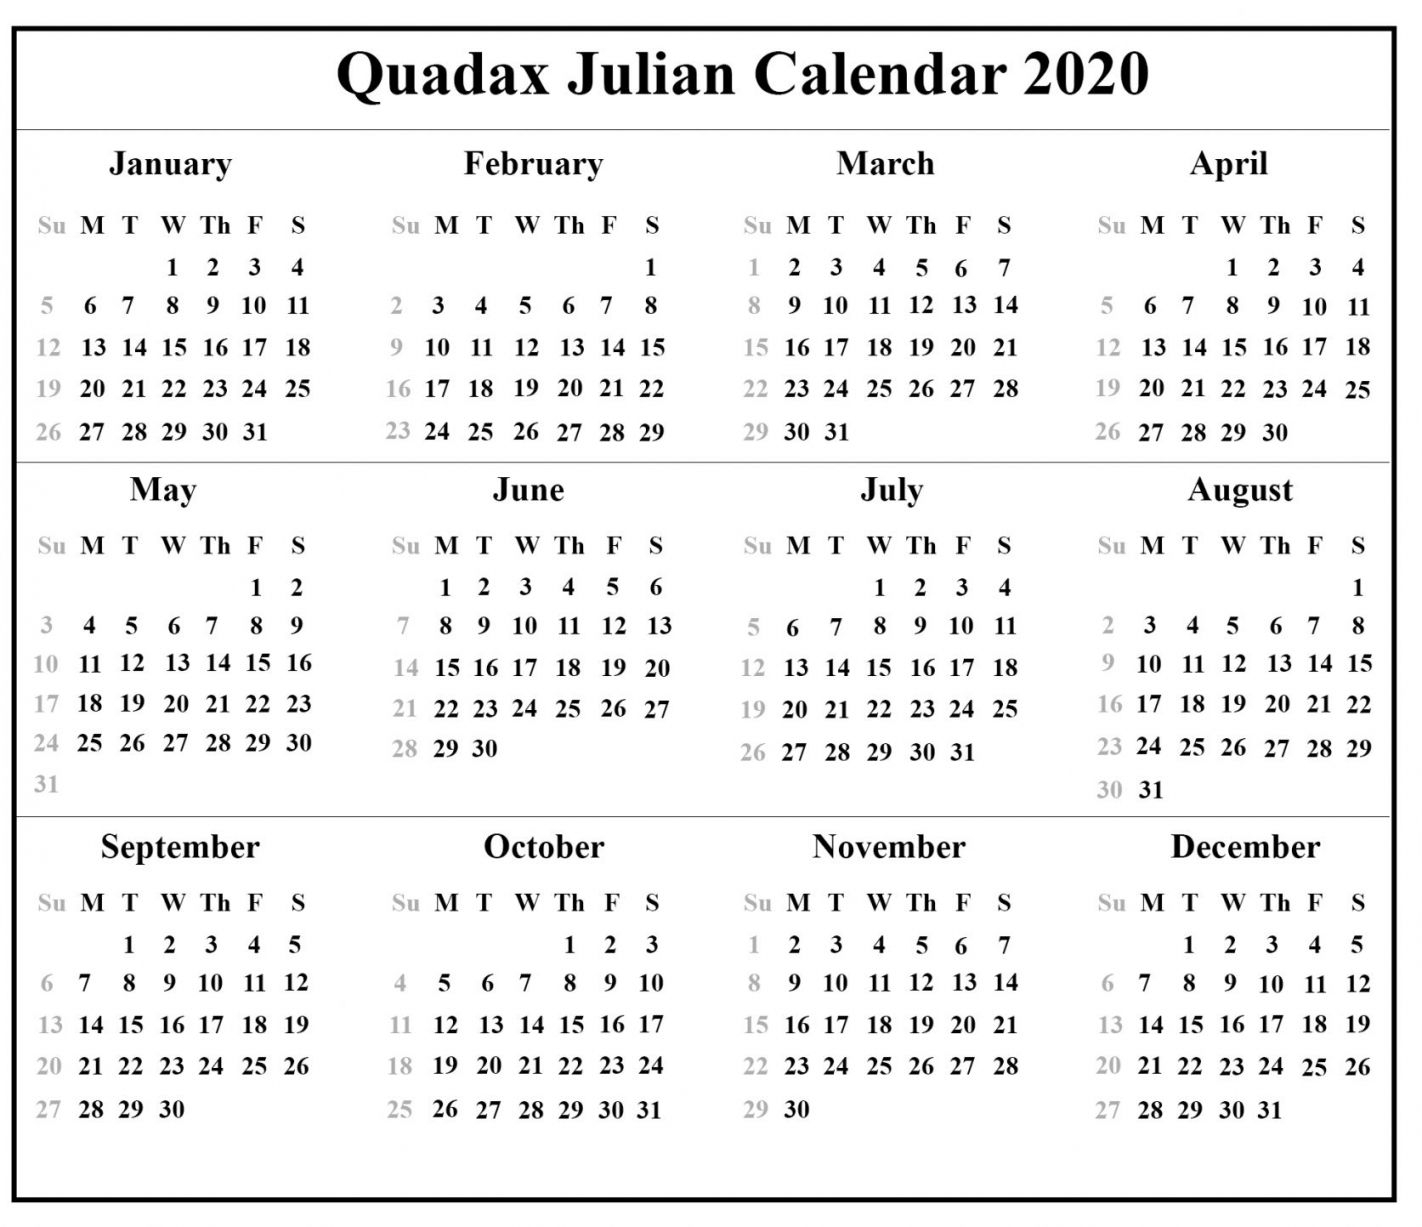 Get 2021 Julian Dates